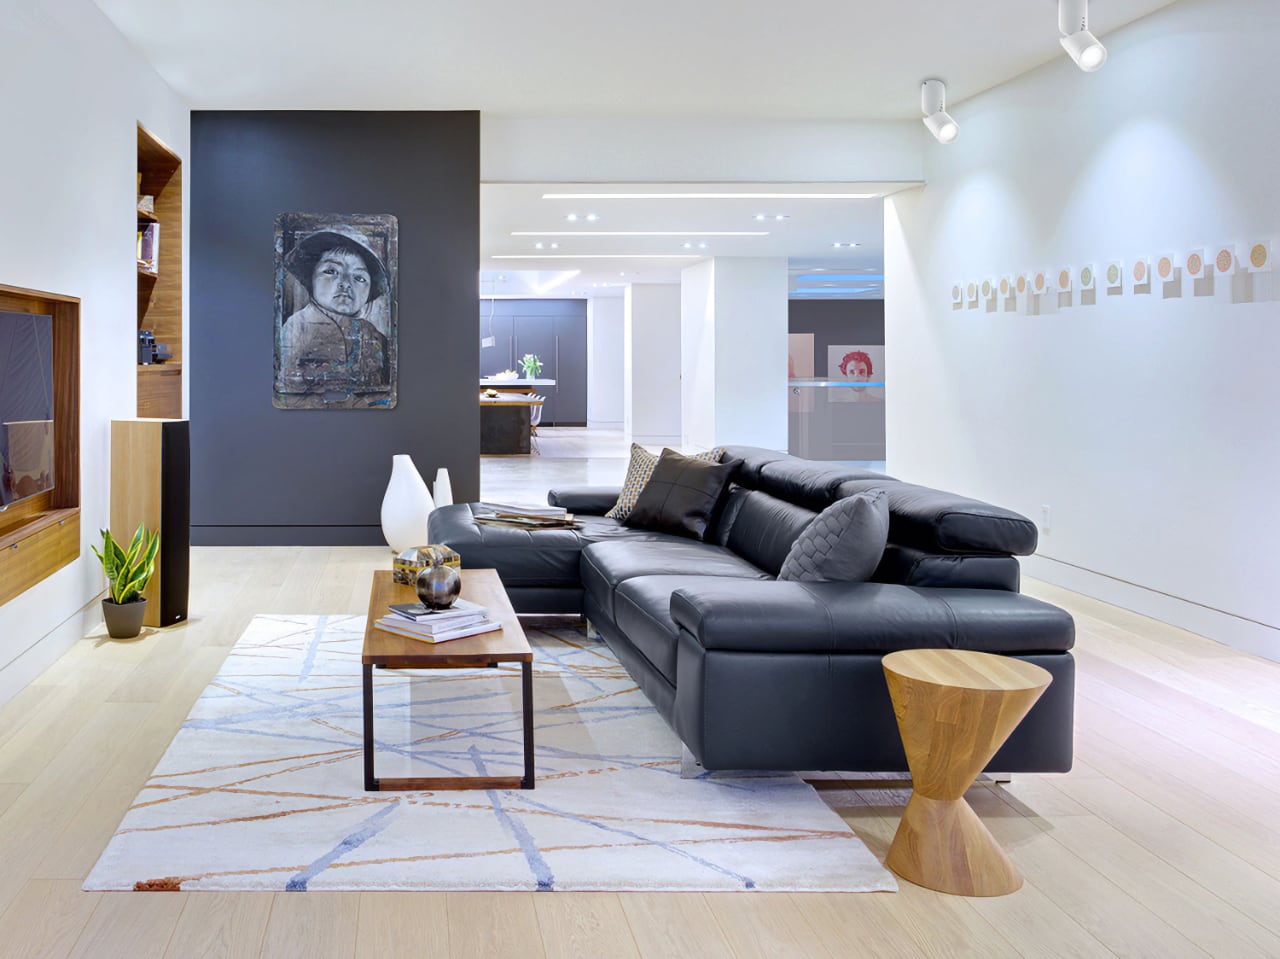 Современная гостиная с черным диваном, деревянным столиком, ковром в голубых тонах. На темной стене висит абстрактное портретное изображение. Освещенное пространство с деревянными элементами и проходами.